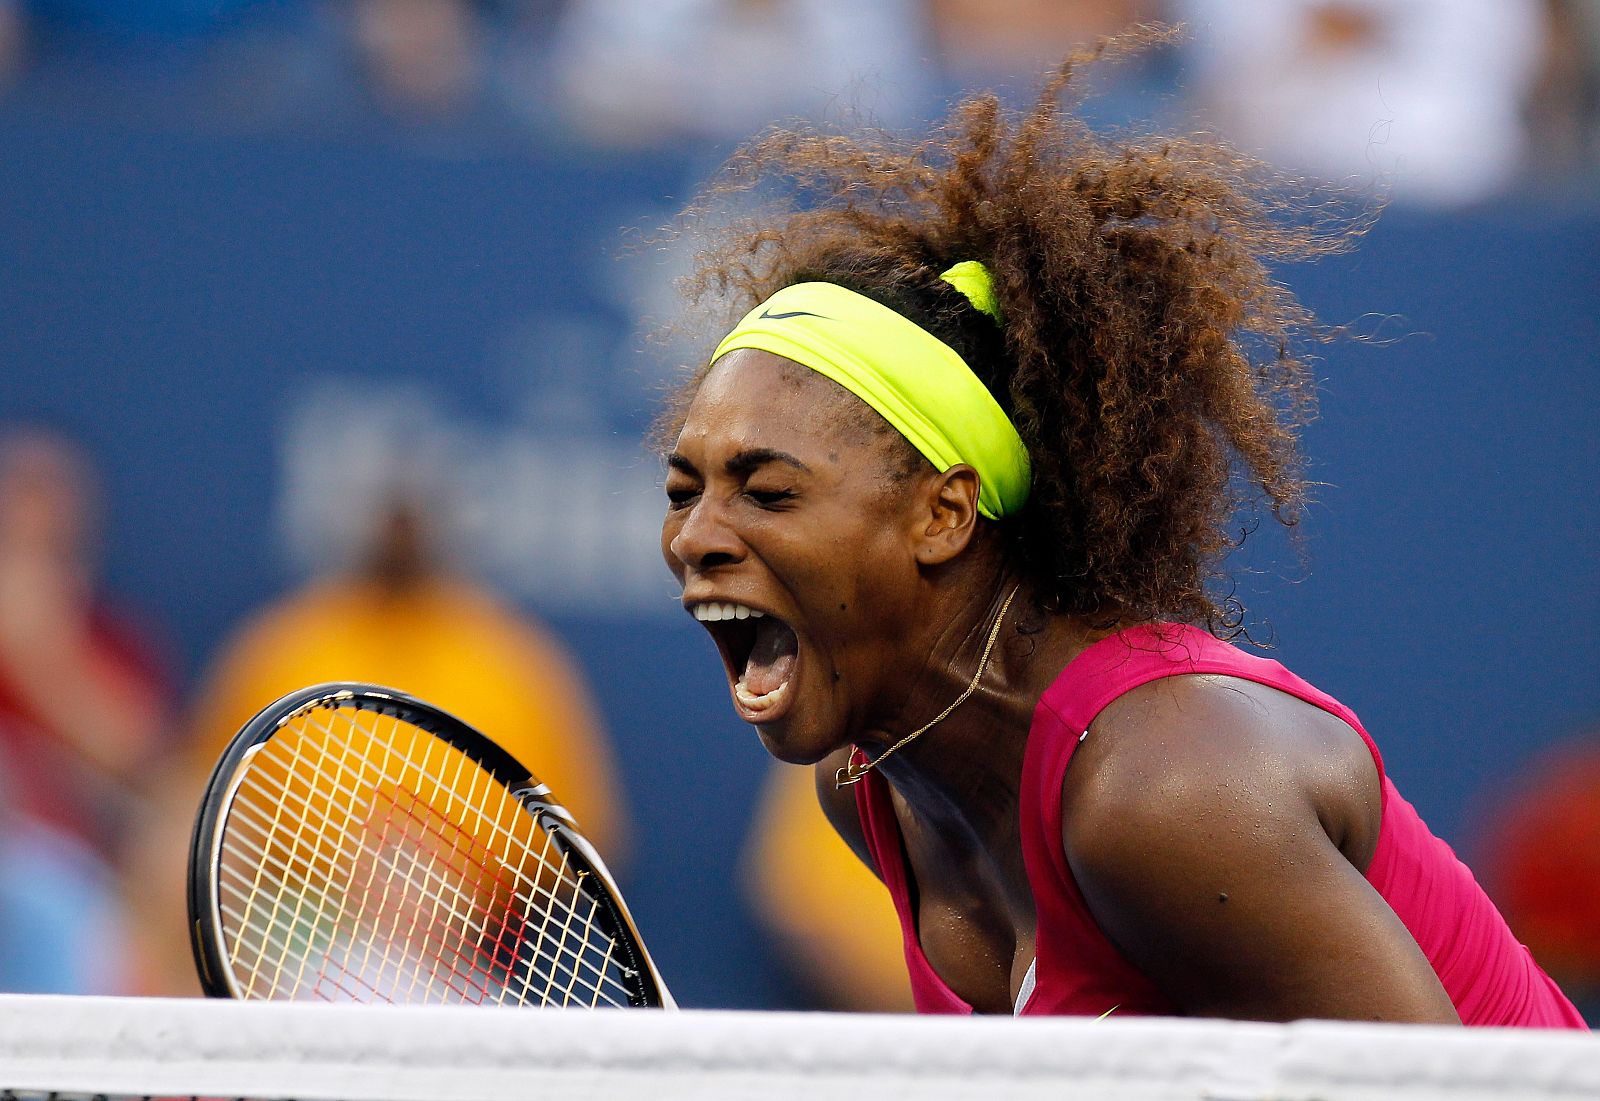 Serena Williams celebra su victoria ante la italiana Errani en su semifinal del US Open 2012.